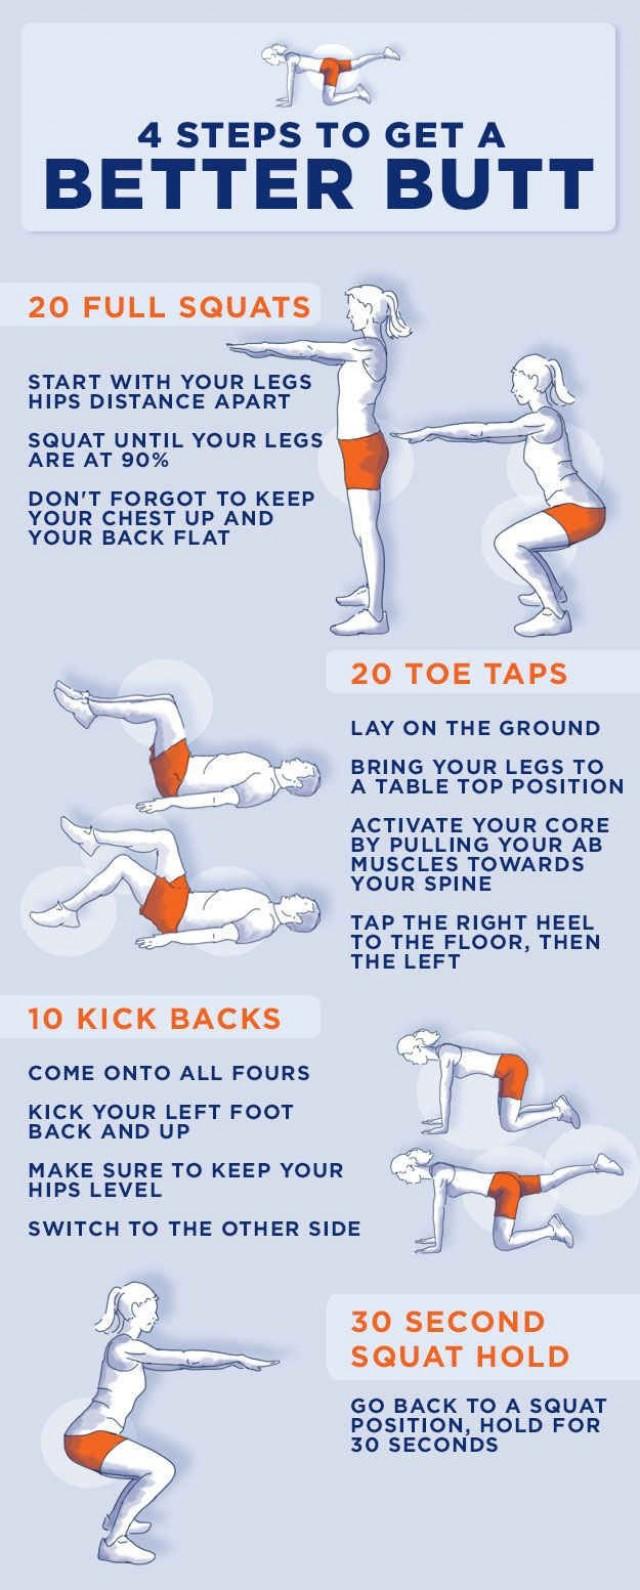 4 Steps To Get A Better Butt